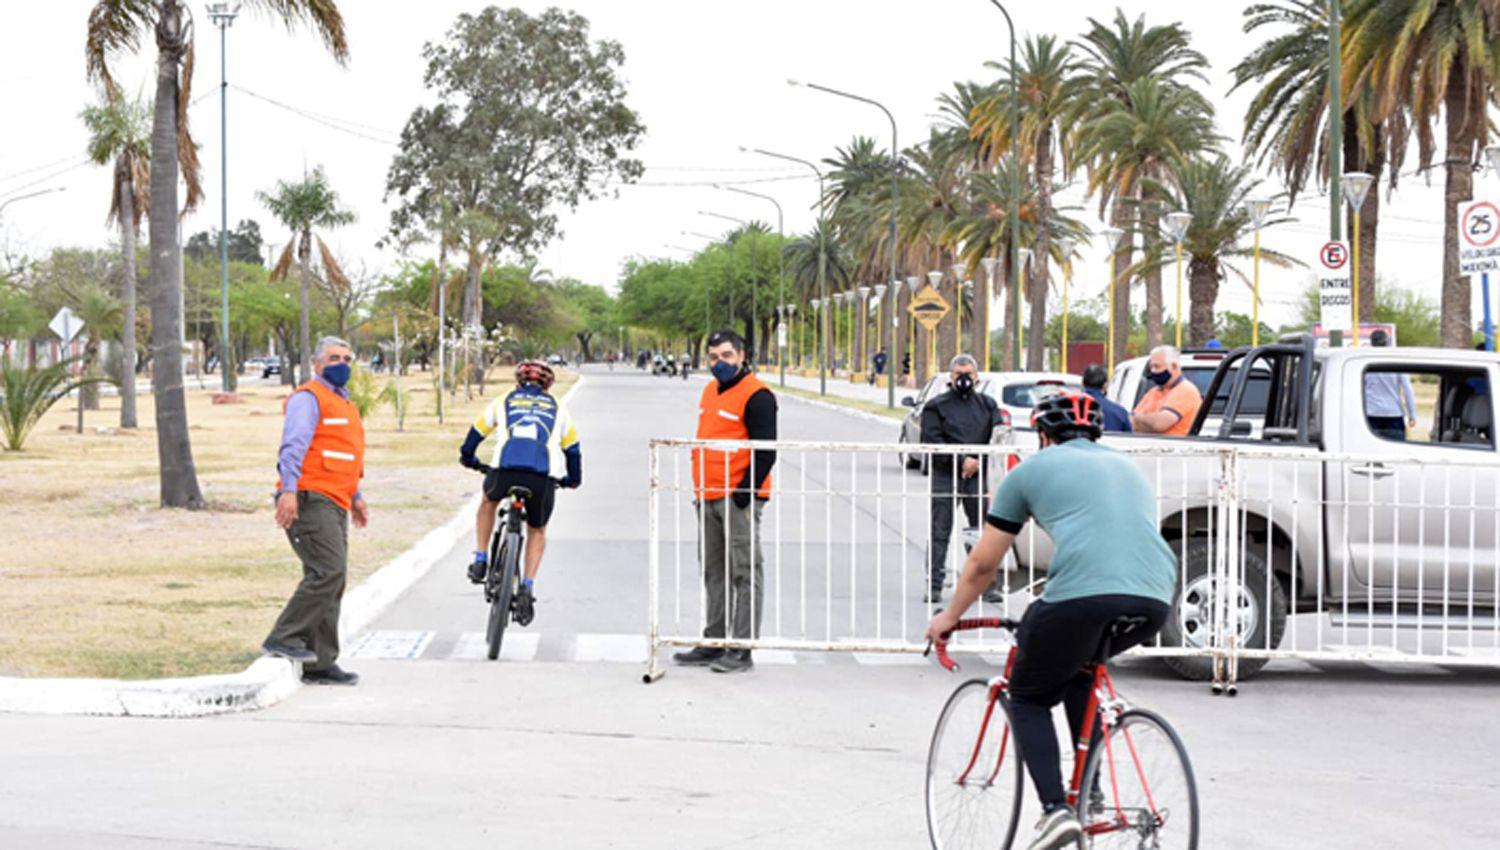 Tanto peatones como ciclistas runners y patinadores
deber�n desplazarse respetando el sentido de las calles